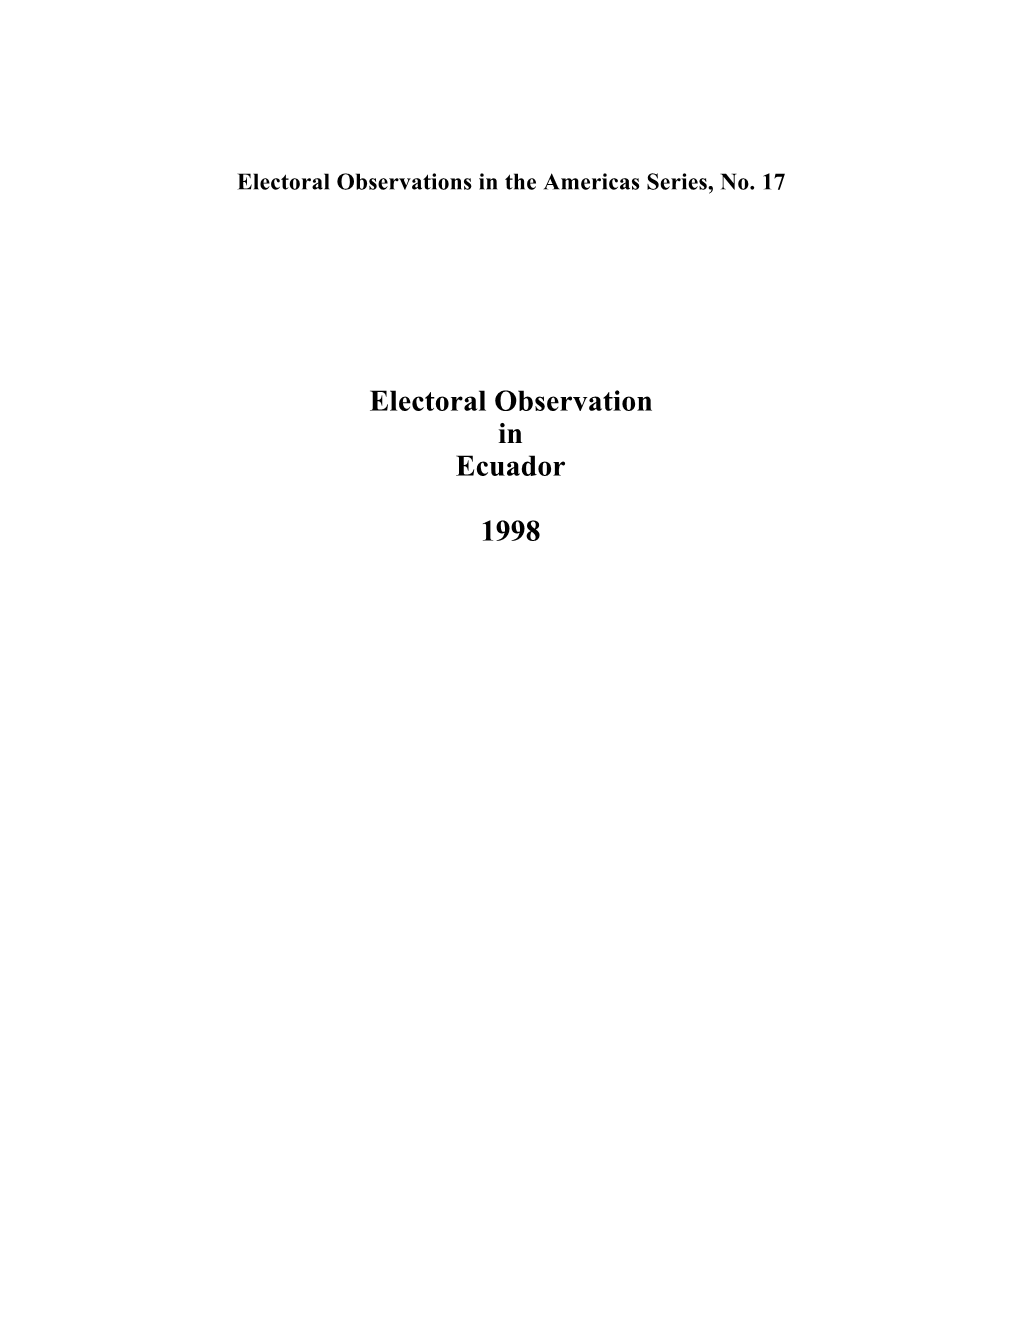 Electoral Observation in Ecuador 1998